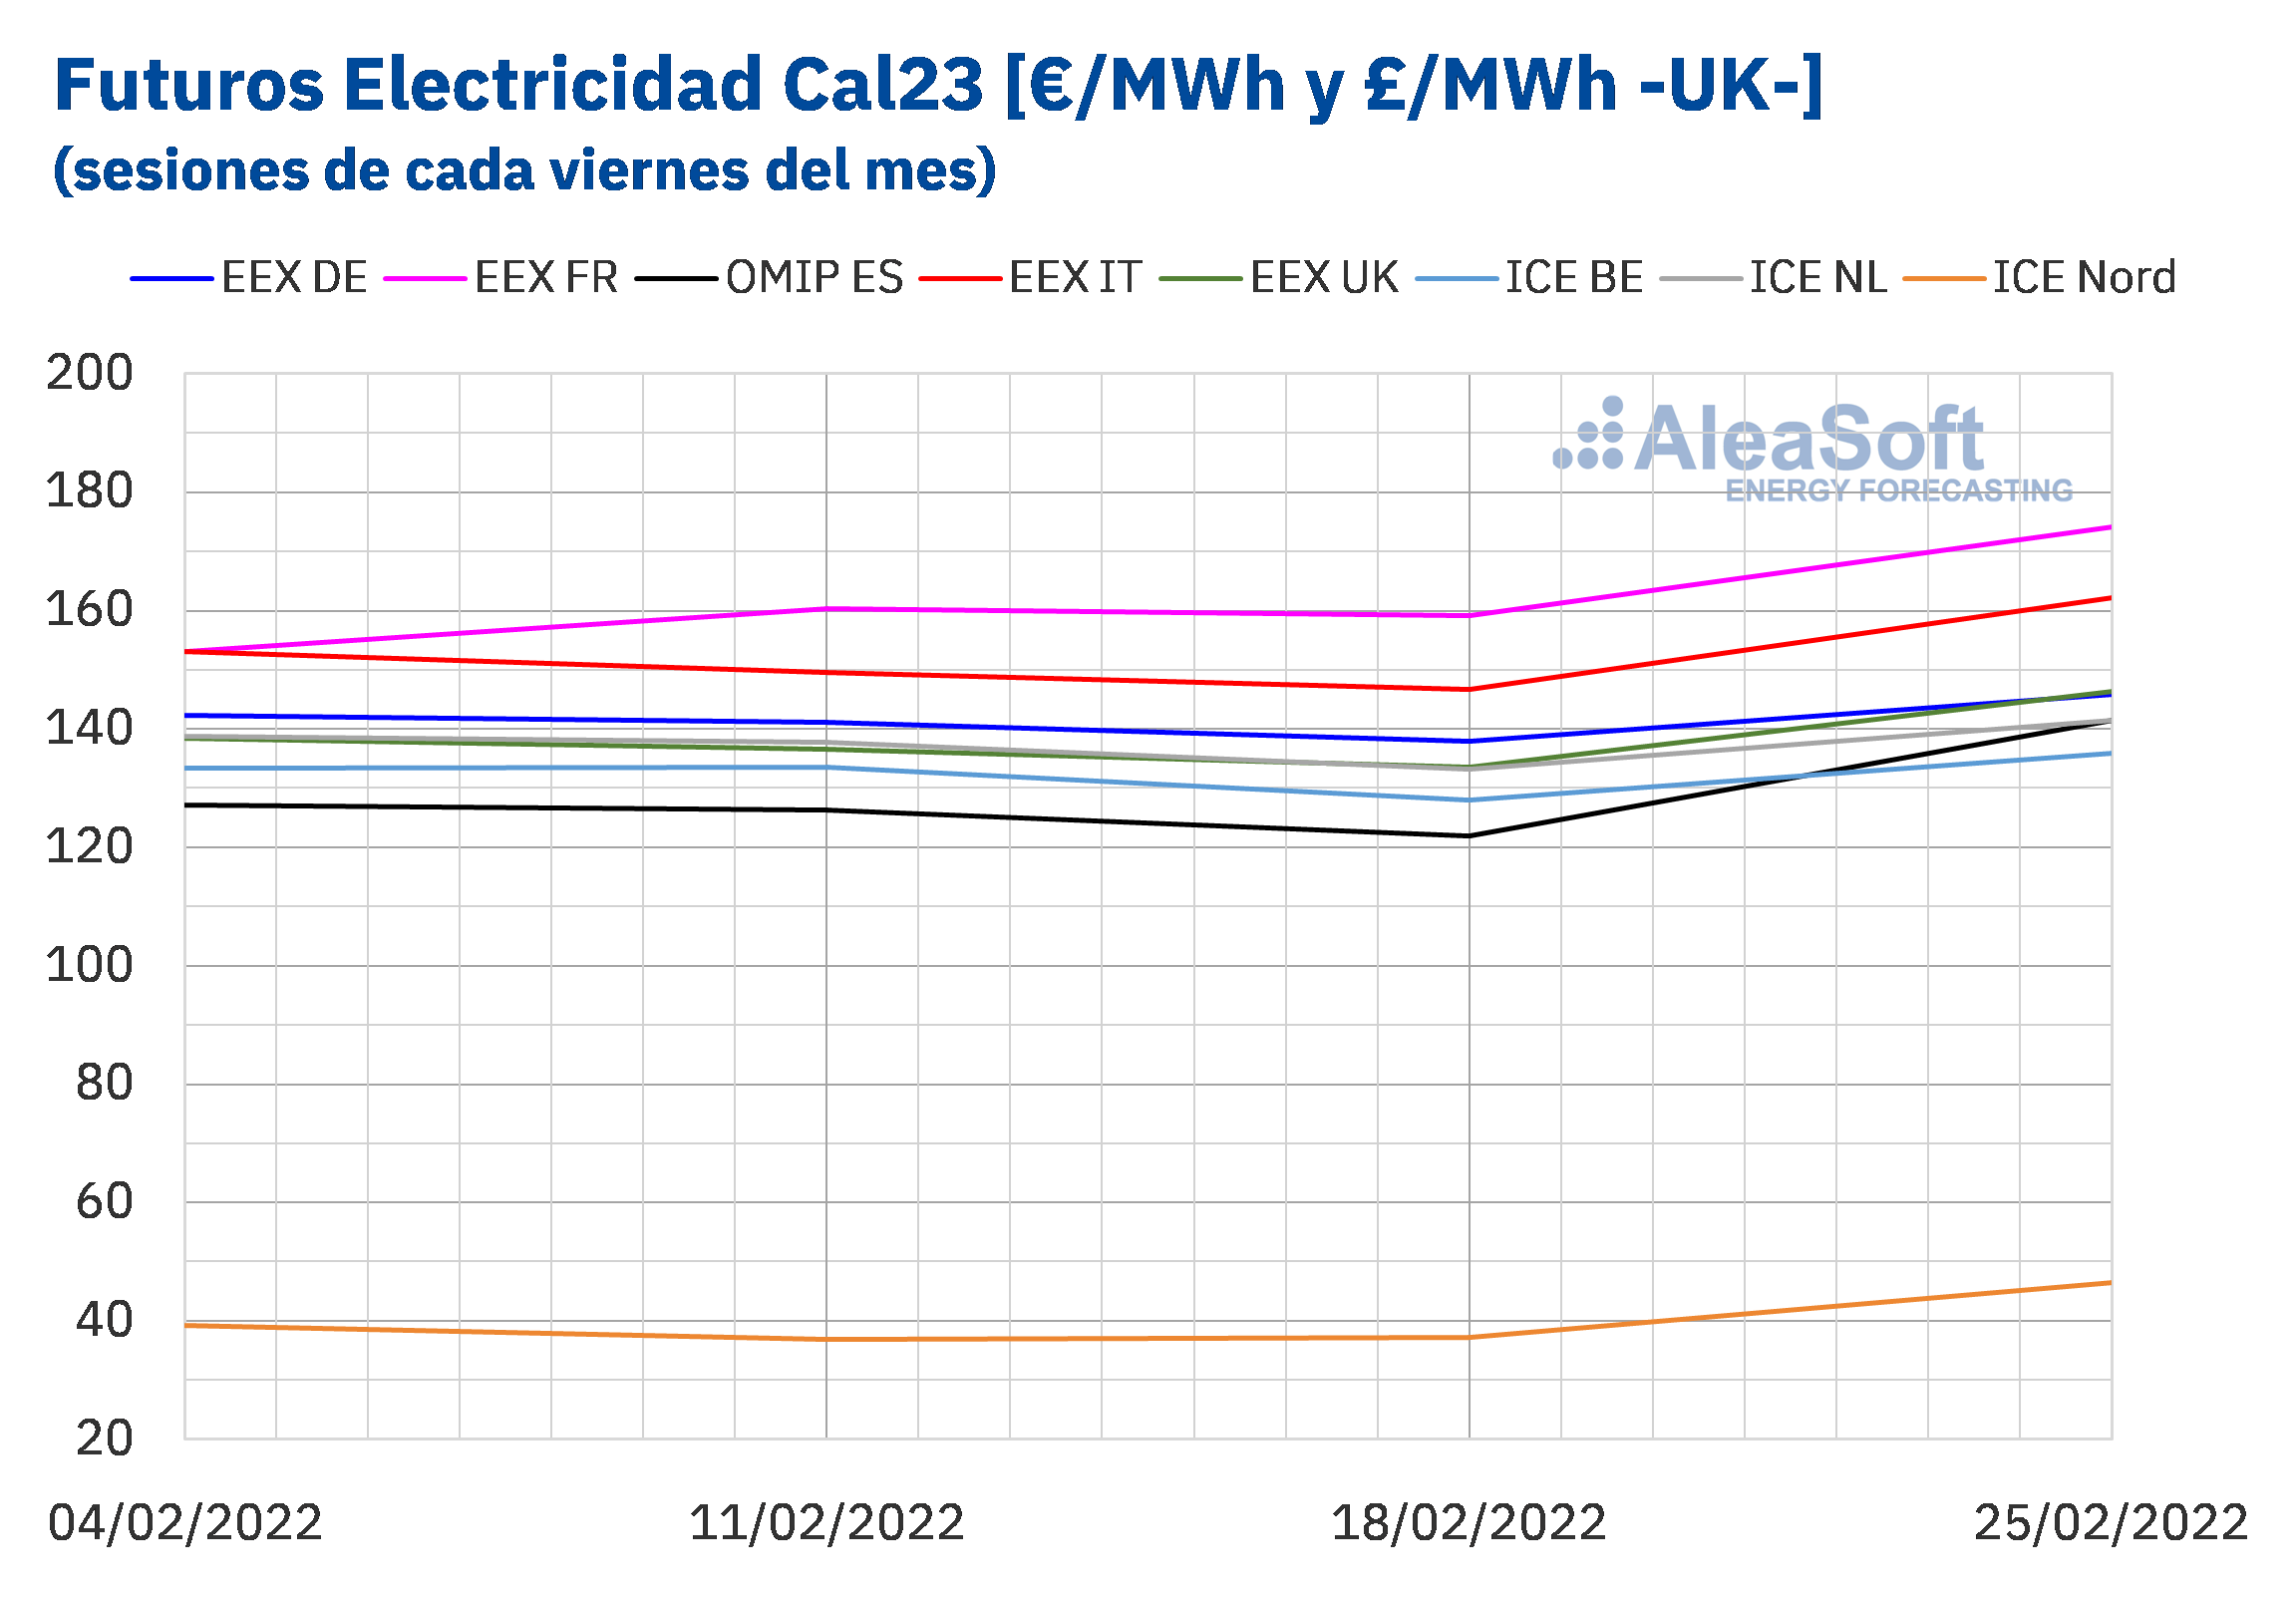 AleaSoft - Precio liquidacion mercados futuros electricidad Europa Y1 Cal23